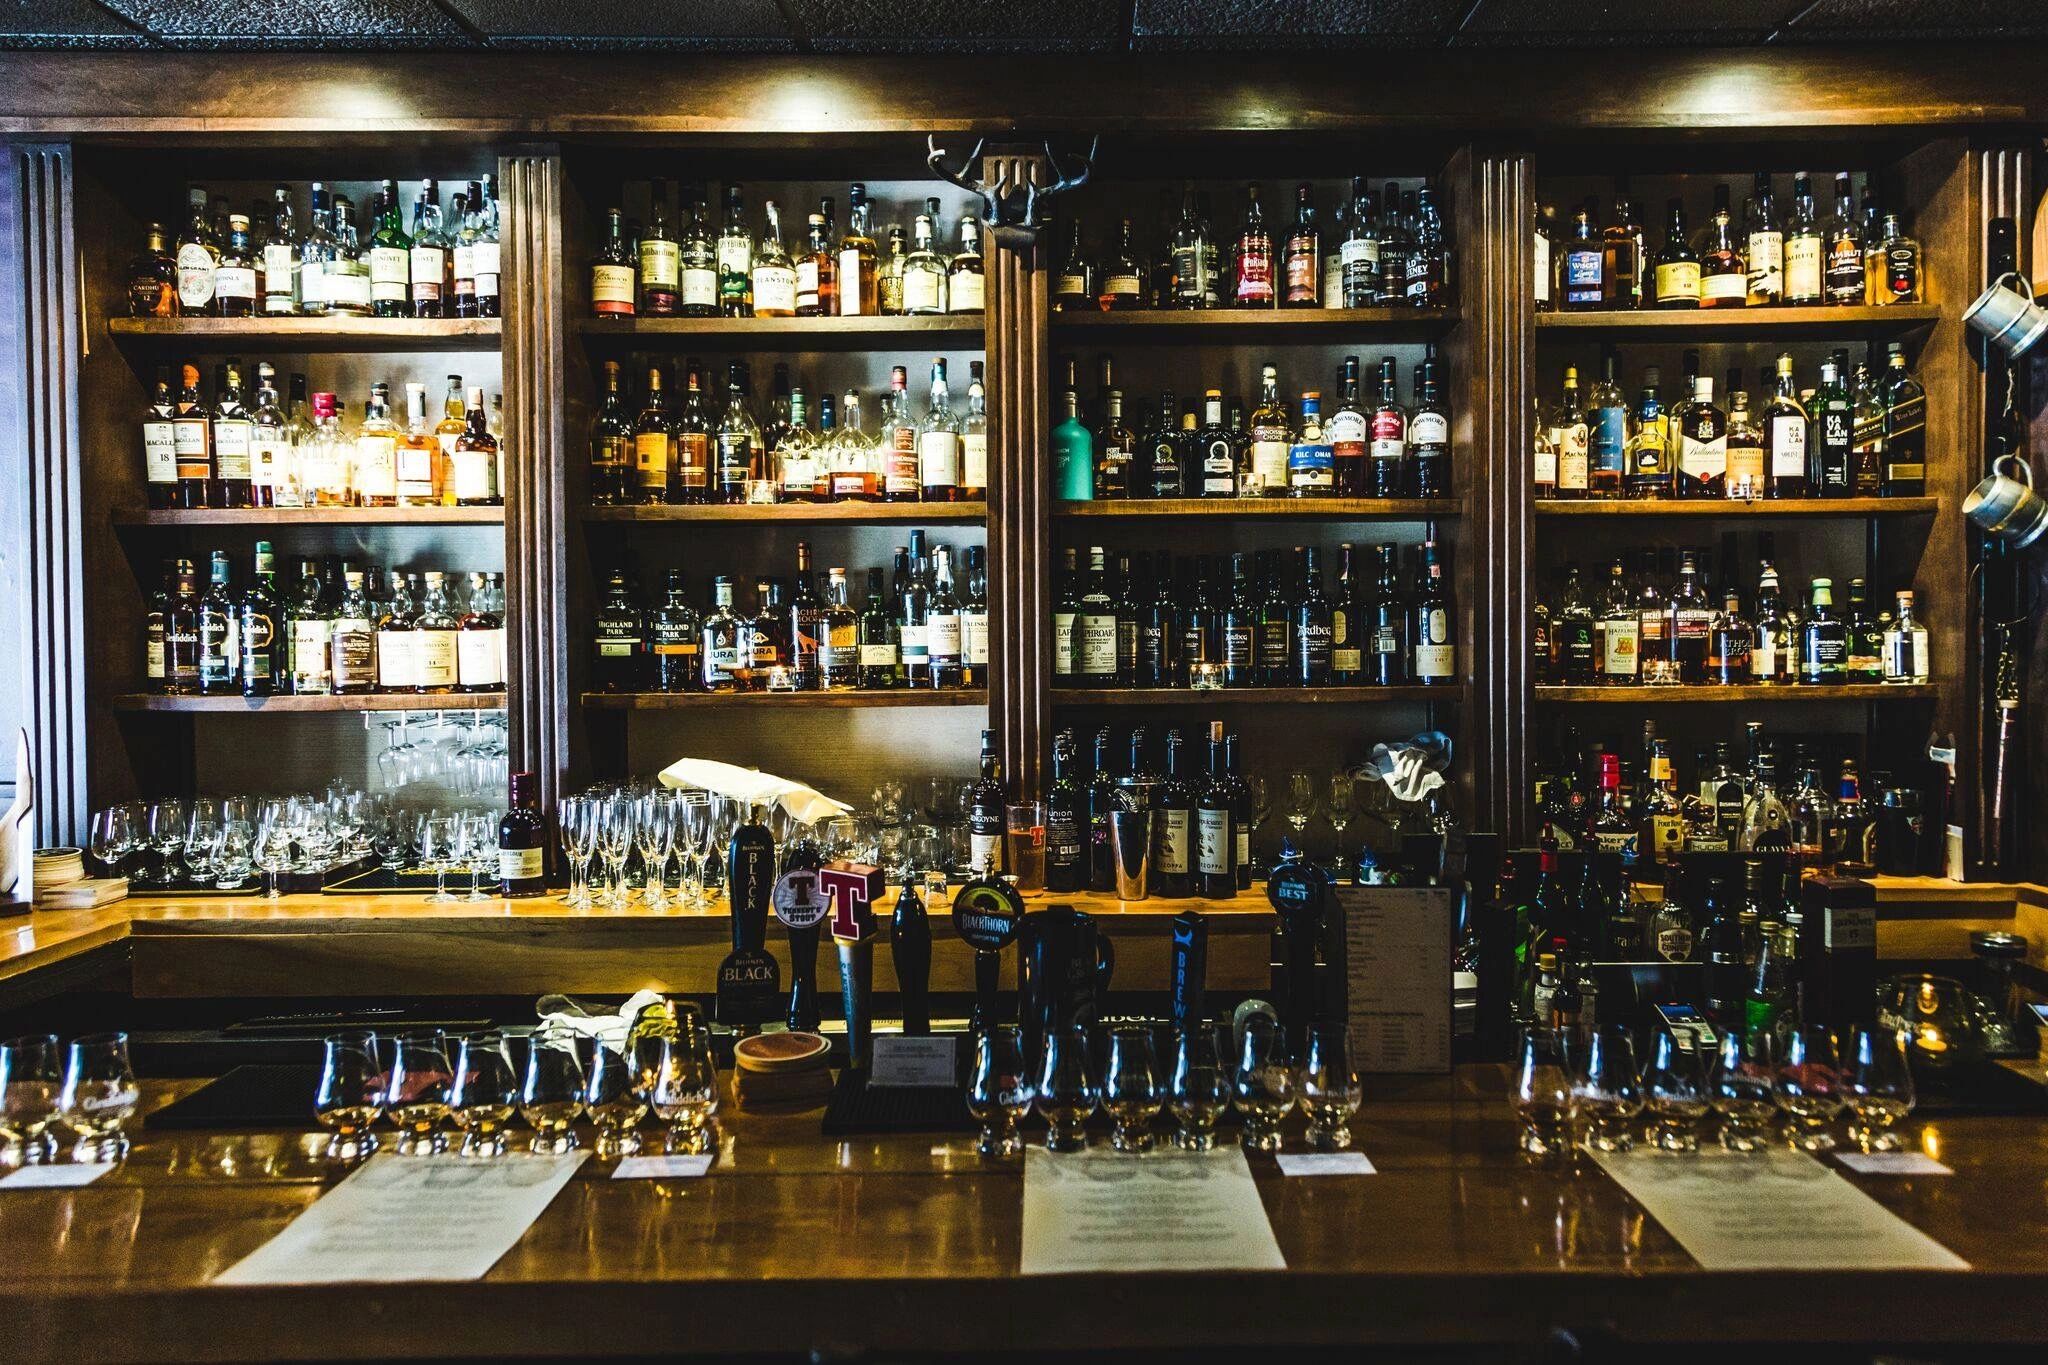 THE CALEDONIAN - Whisky Bar, Whisky Bar, Pub, Scottish